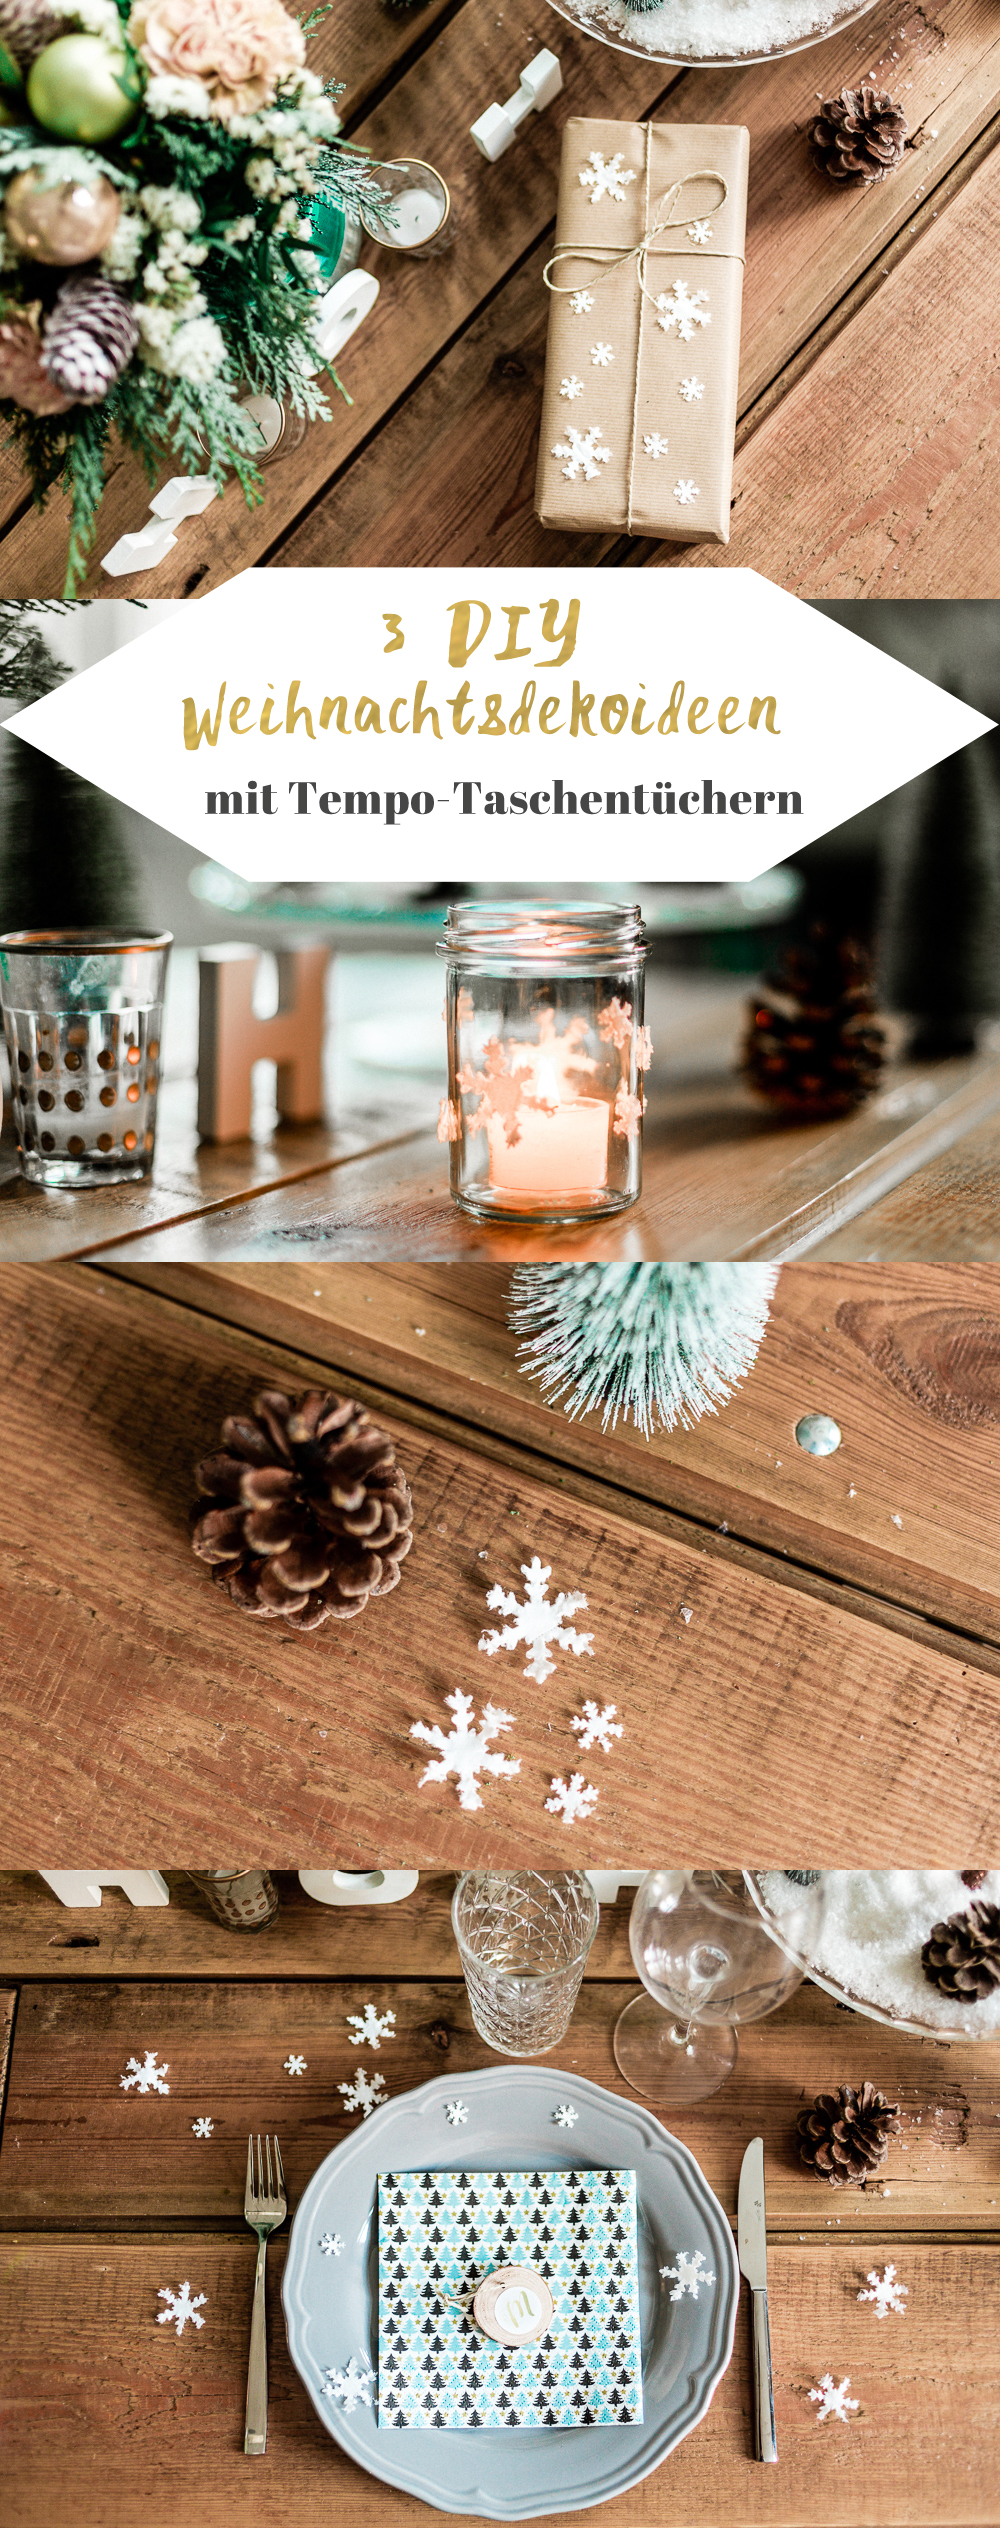 3 DIY Weihnachtsdeko-Ideen mit Tempo Taschentüchern Marmeladenglas Teelicht